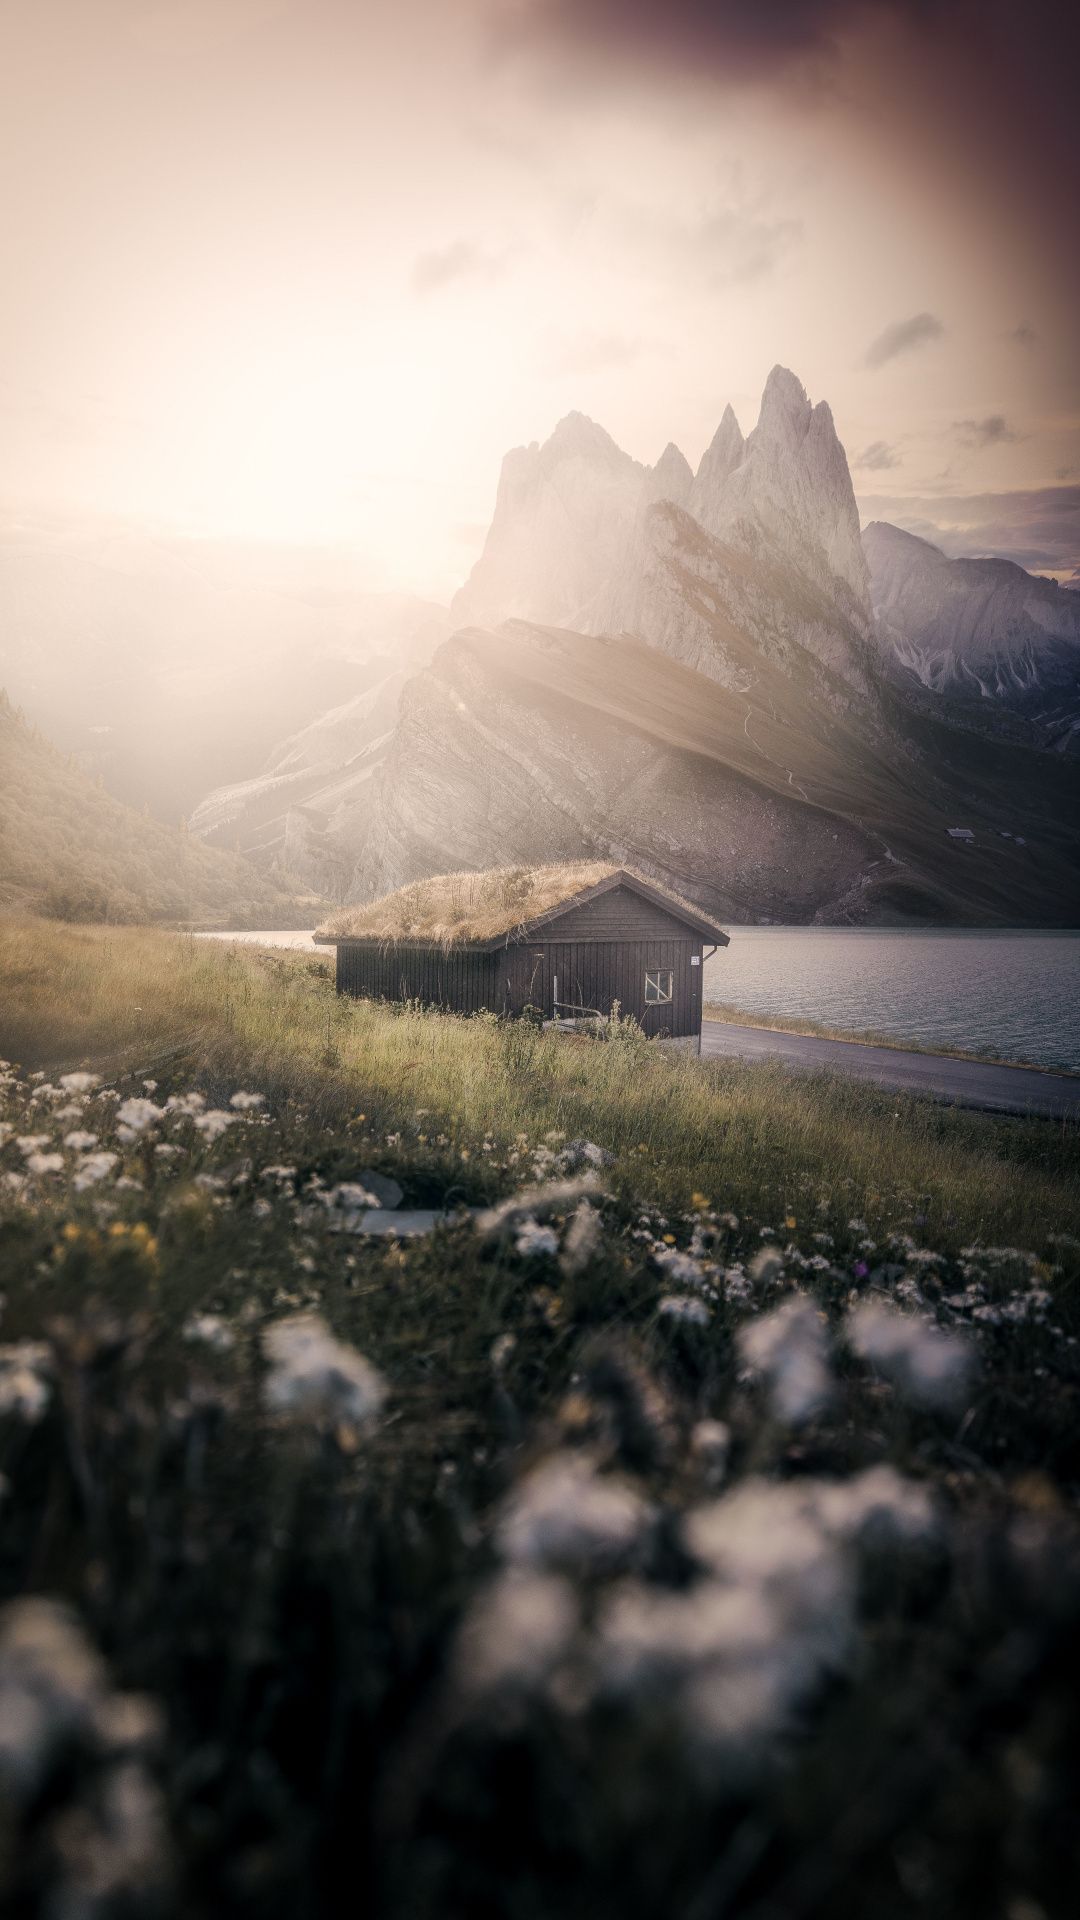 Hut, nature, Dolomites, mountains, landscape, 1080x1920 wallpaper